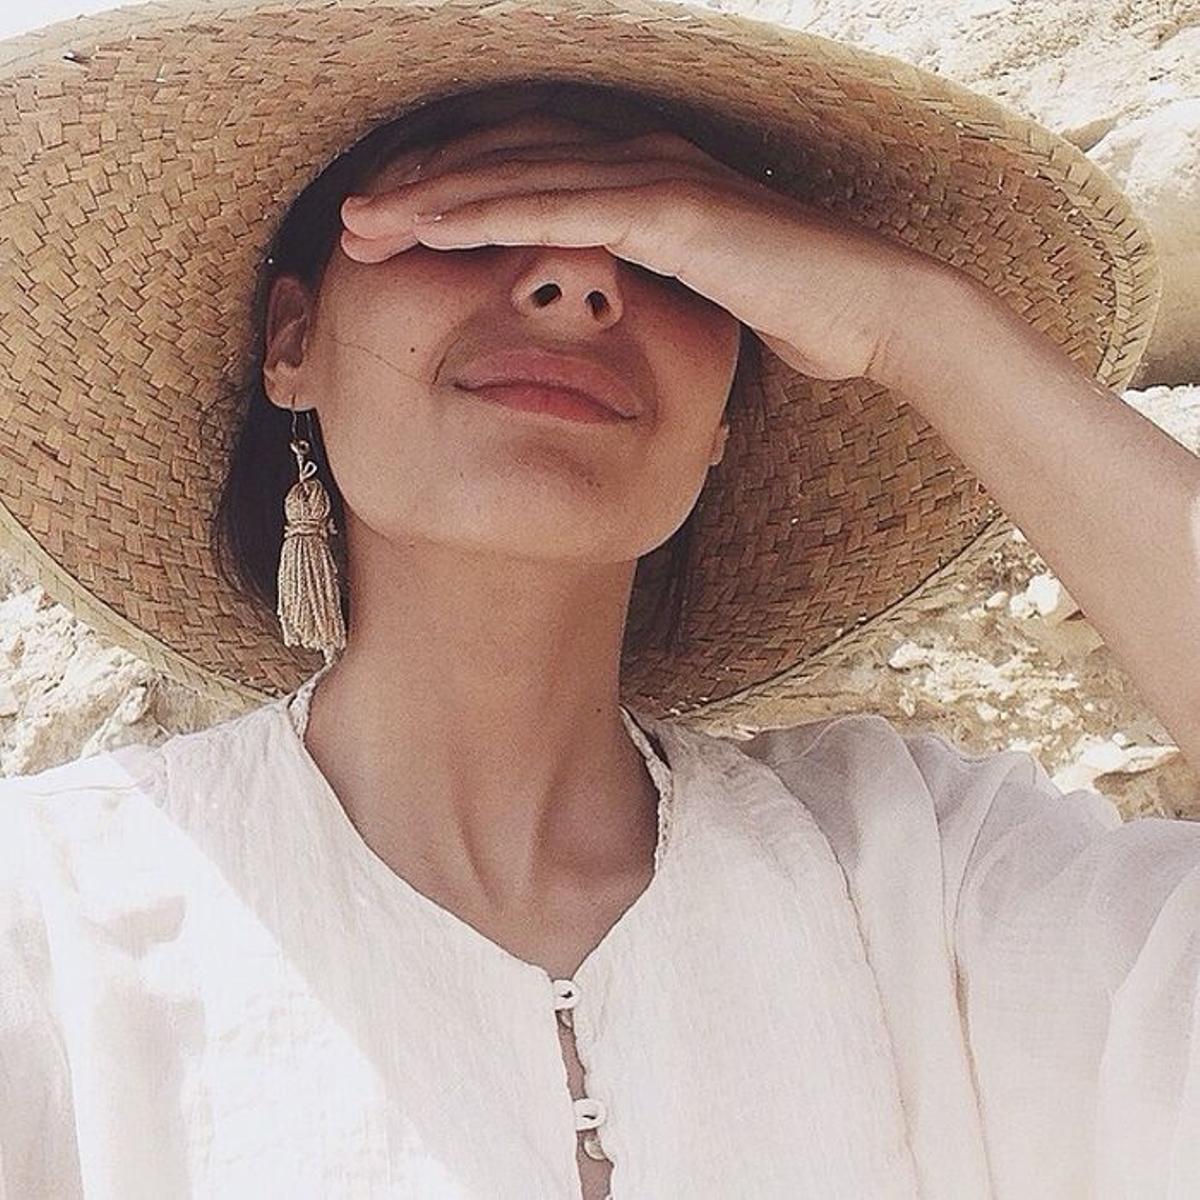 Sombreros de verano: cómo llevarlos - Maria Bernad